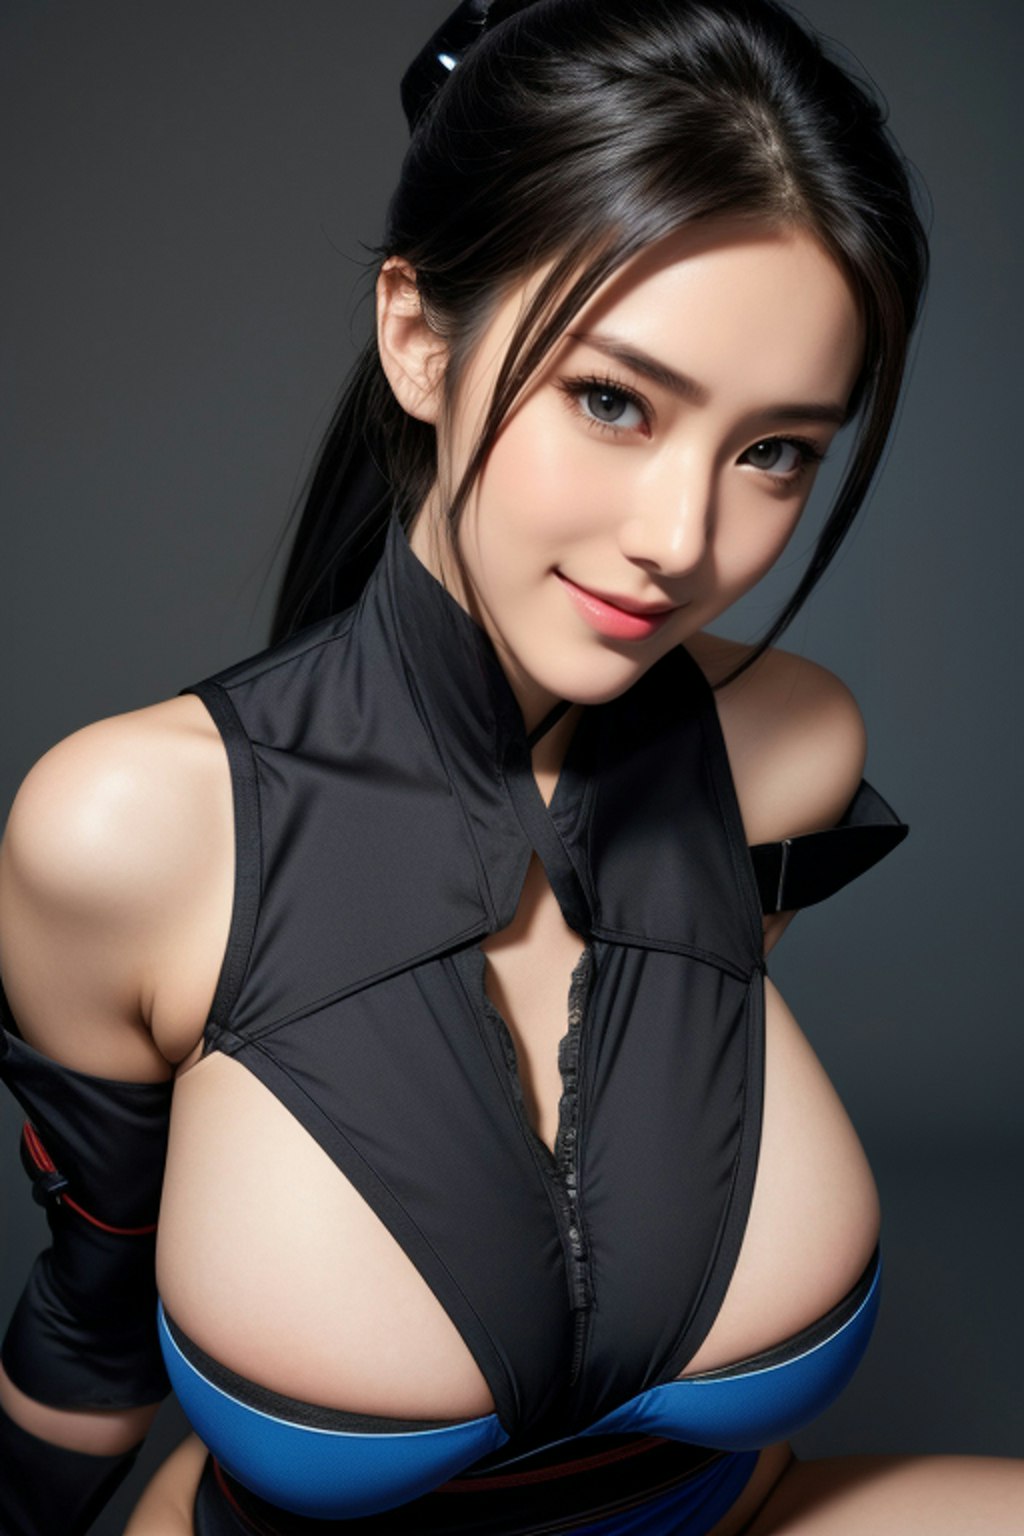 Enchanted Beauty Ninja AI美女が放つ華やかな忍び装束 01